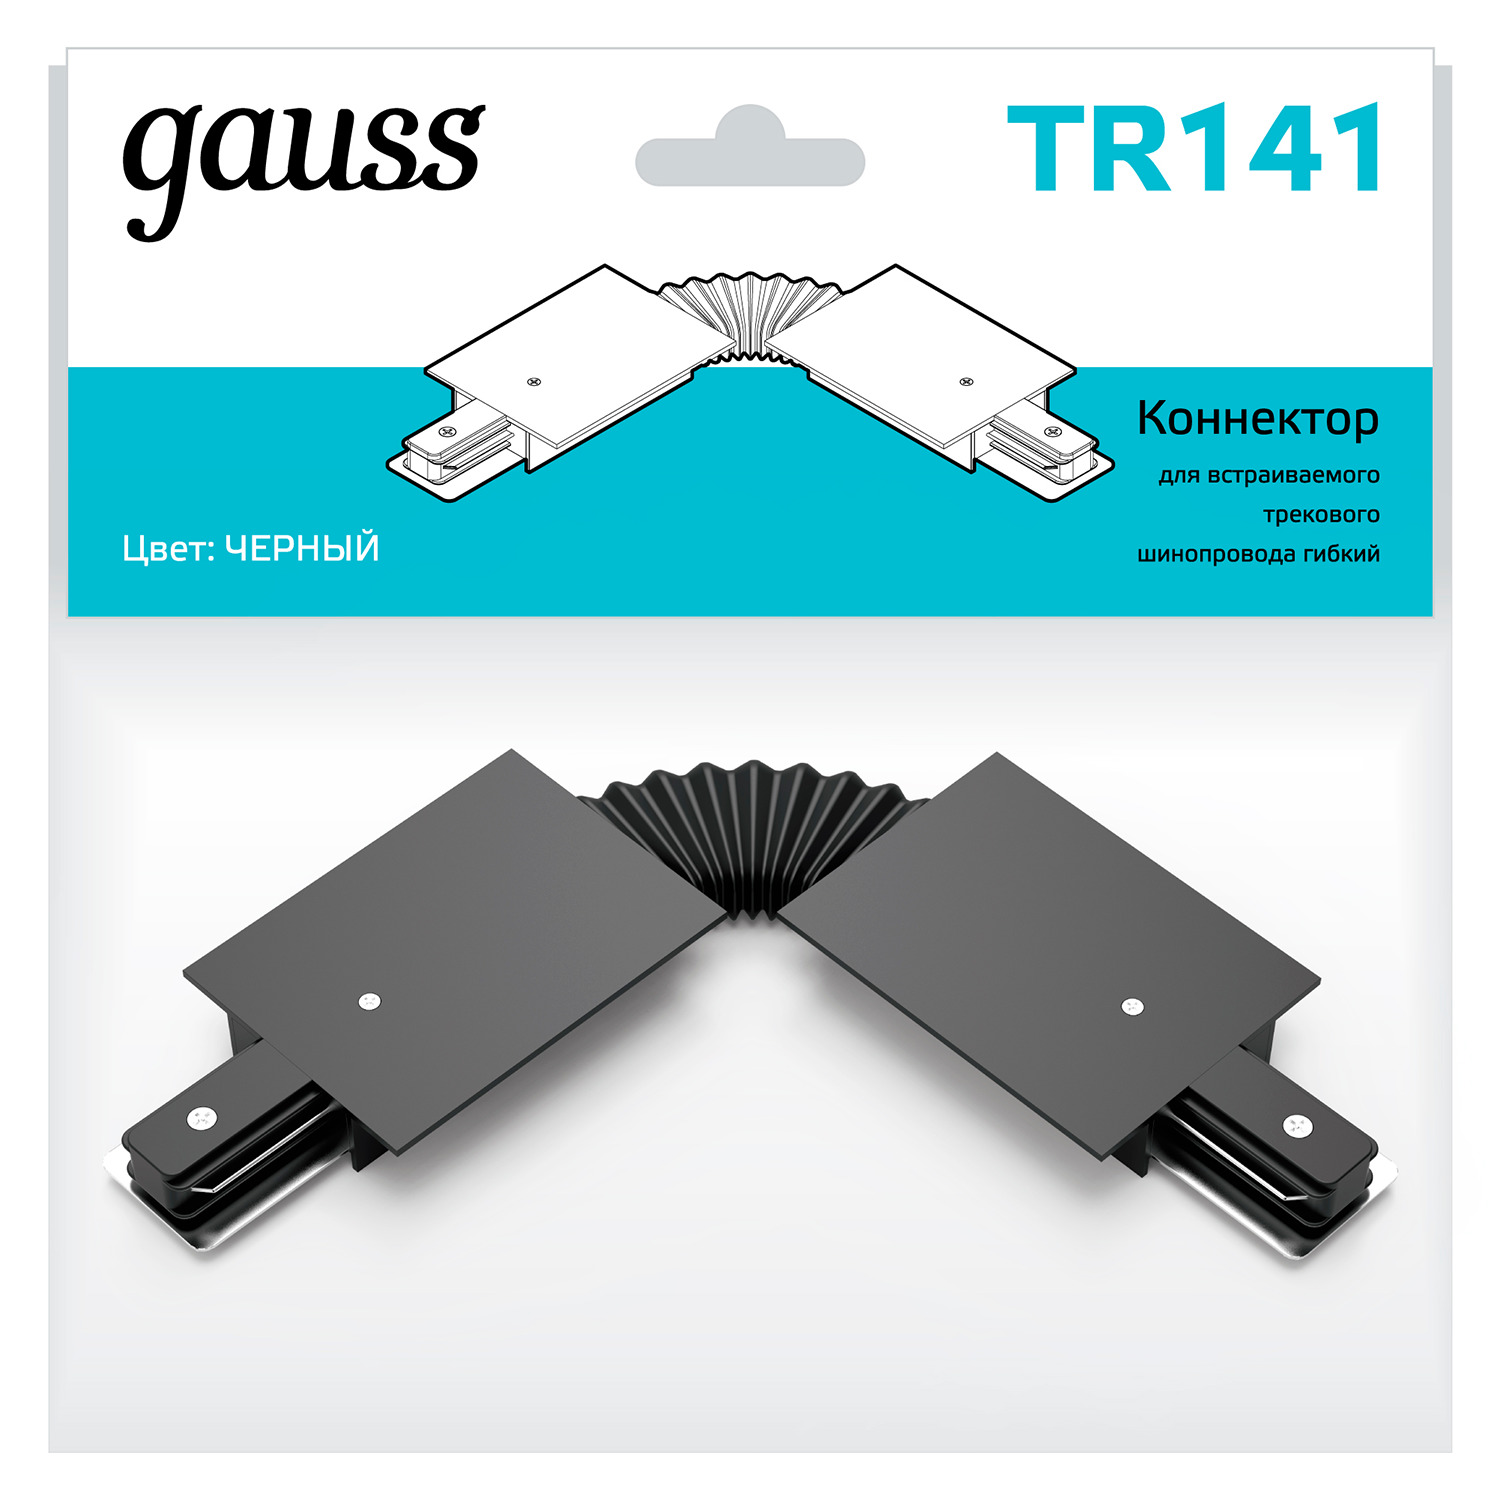 Коннектор Gauss для встраиваемых трековых шинопроводов гибкий (I) черный коннектор для соединения встраиваемых трековых шинопроводов gauss гибкий цвет черный